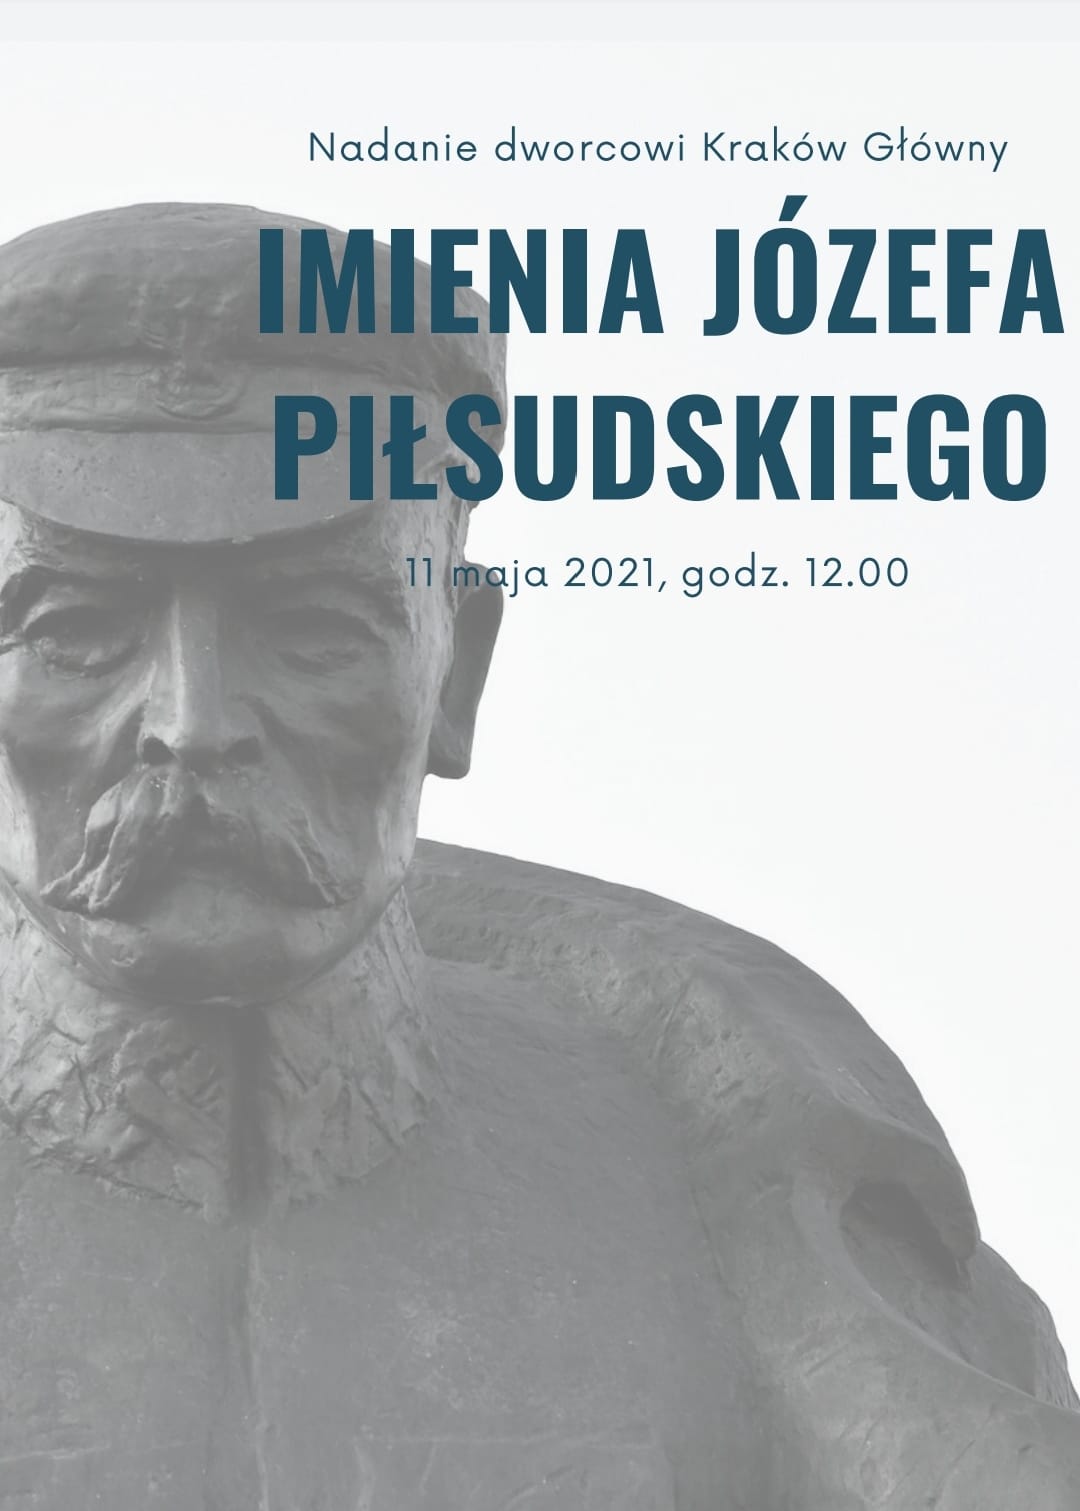 Nadanie dworcowi Kraków Główny imienia Józefa Piłsudskiego